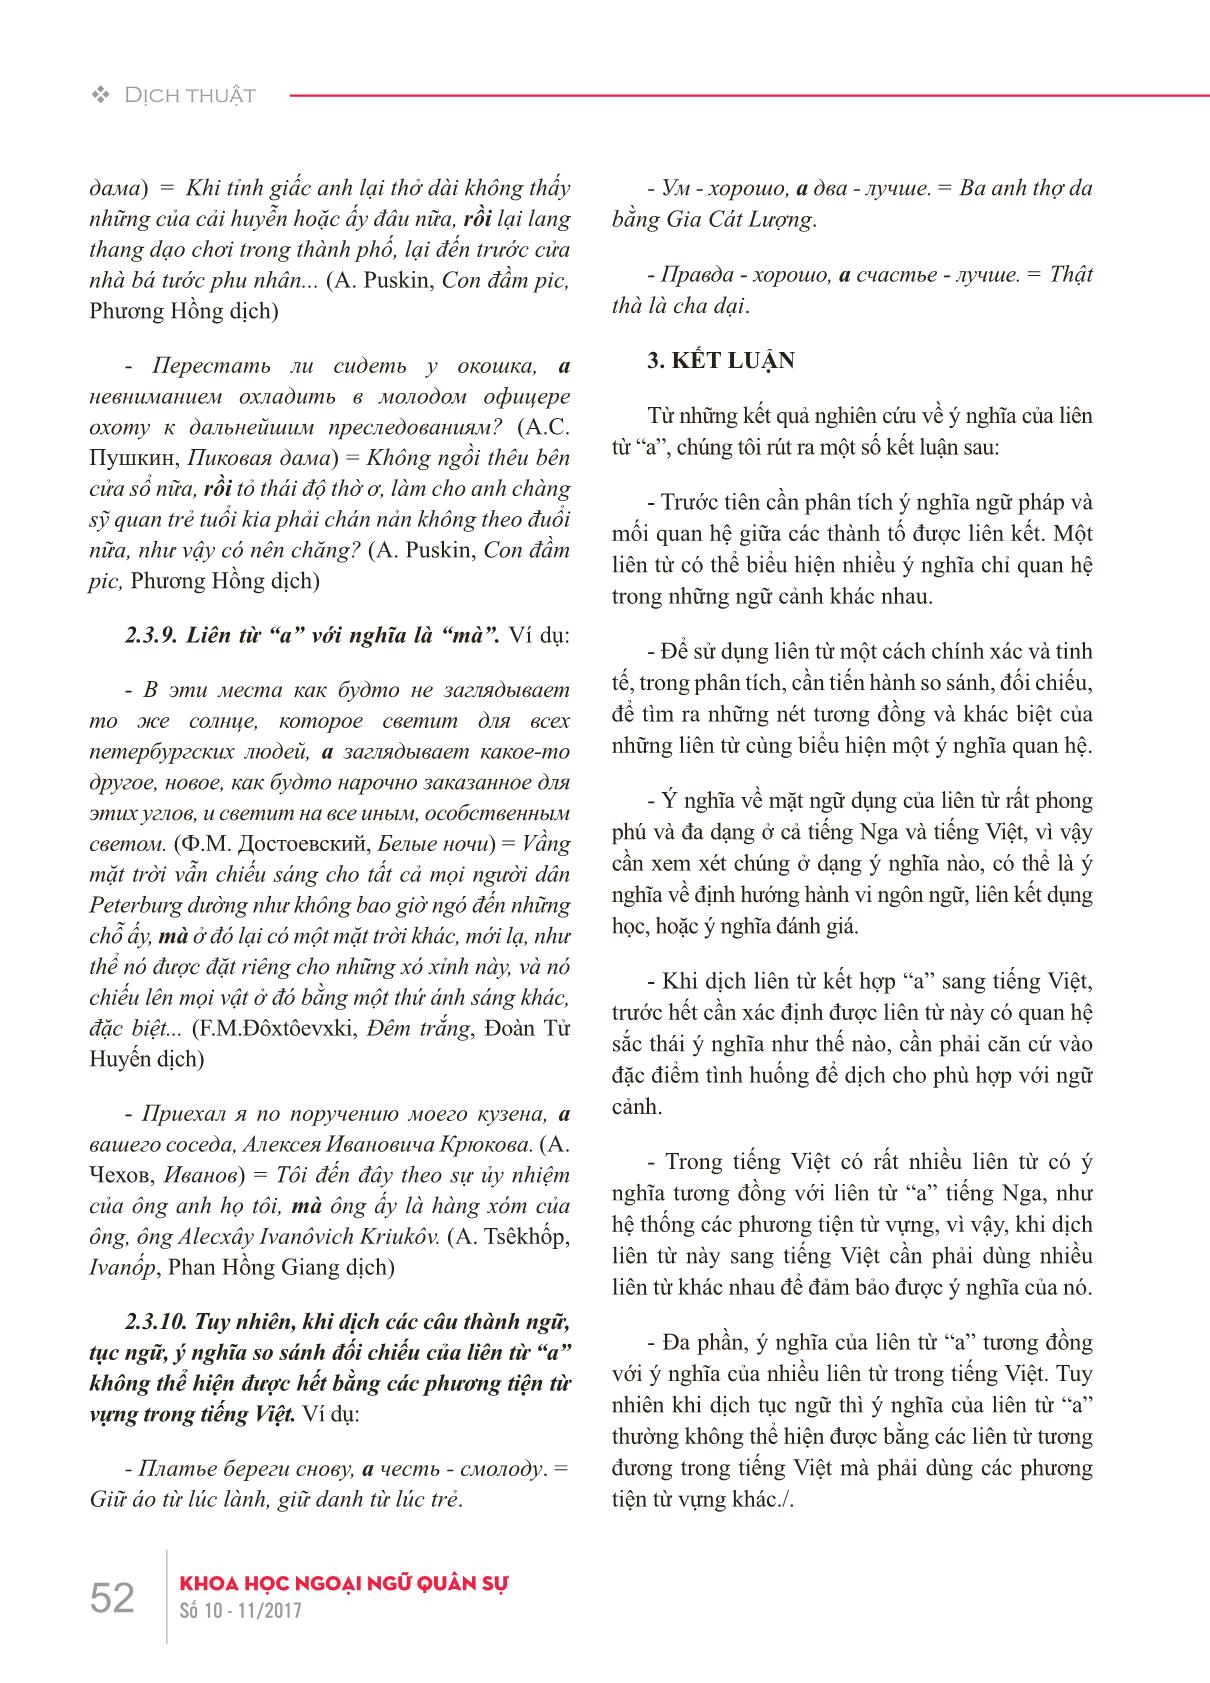 Liên từ kết hợp “a” trong tiếng Nga và các cách truyền đạt sang tiếng Việt trang 7